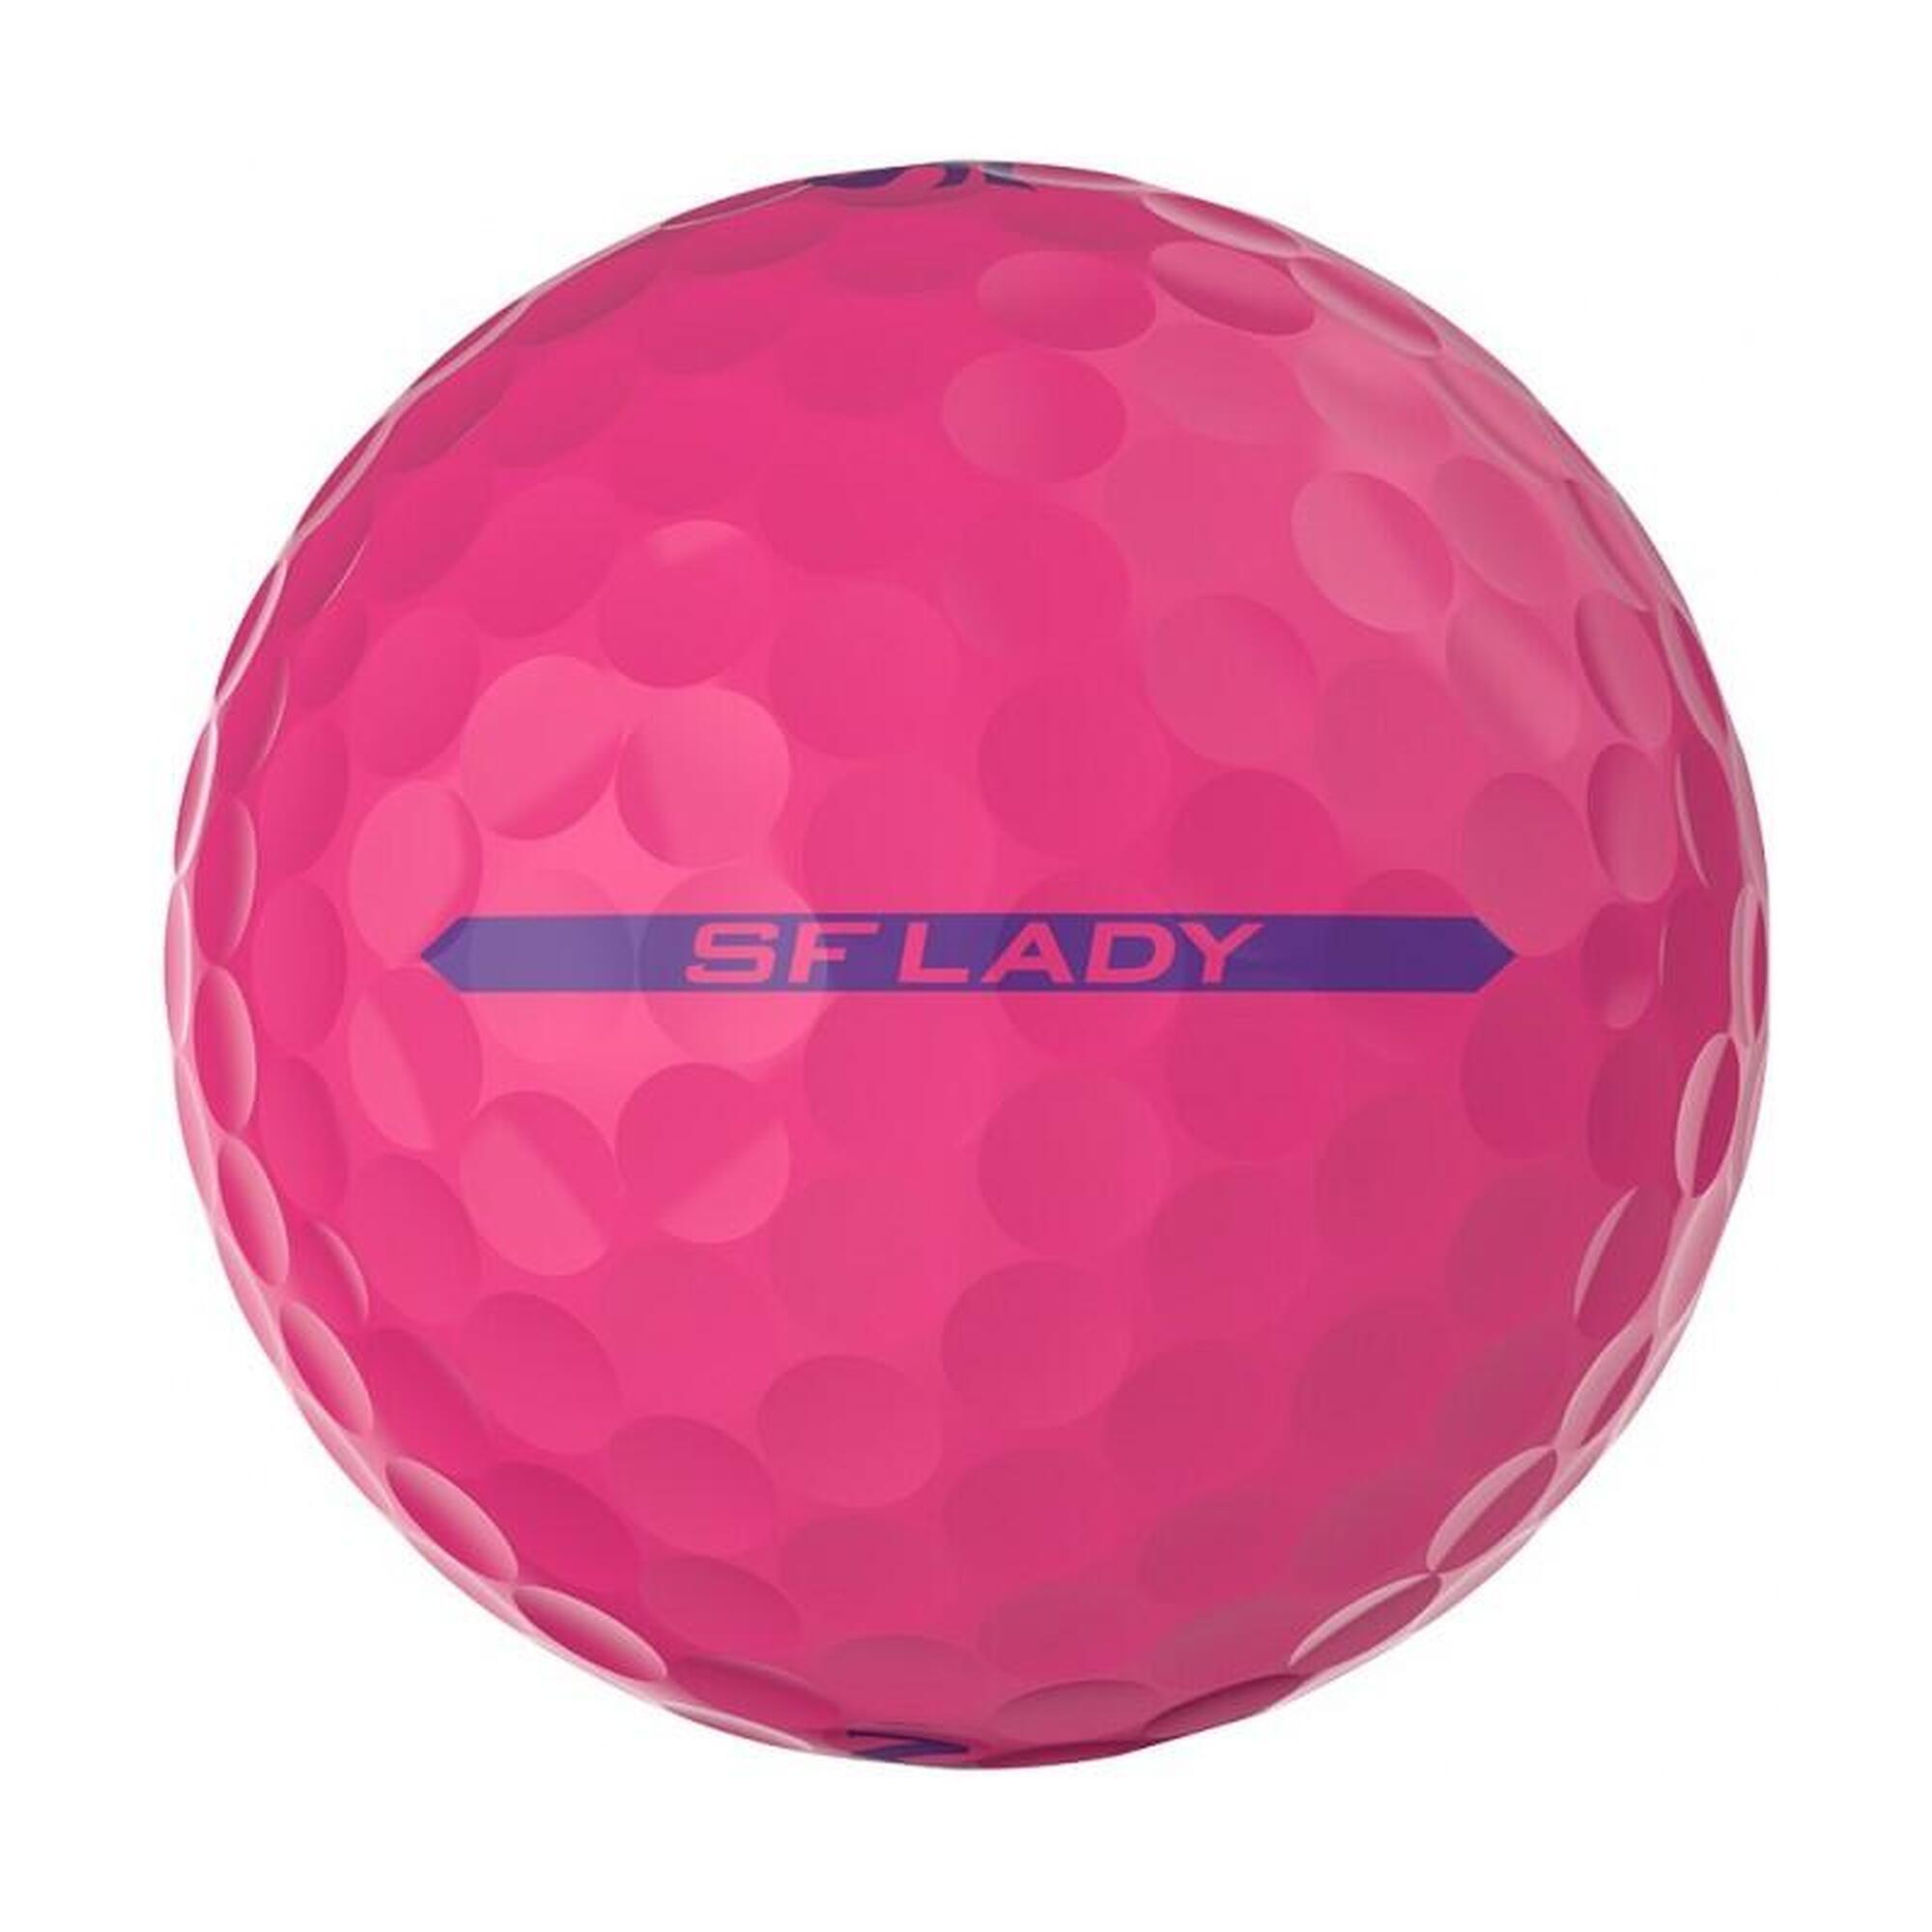 Doos met 12 Srixon Soft Feel Ladies-golfballen Kleur: passion roze